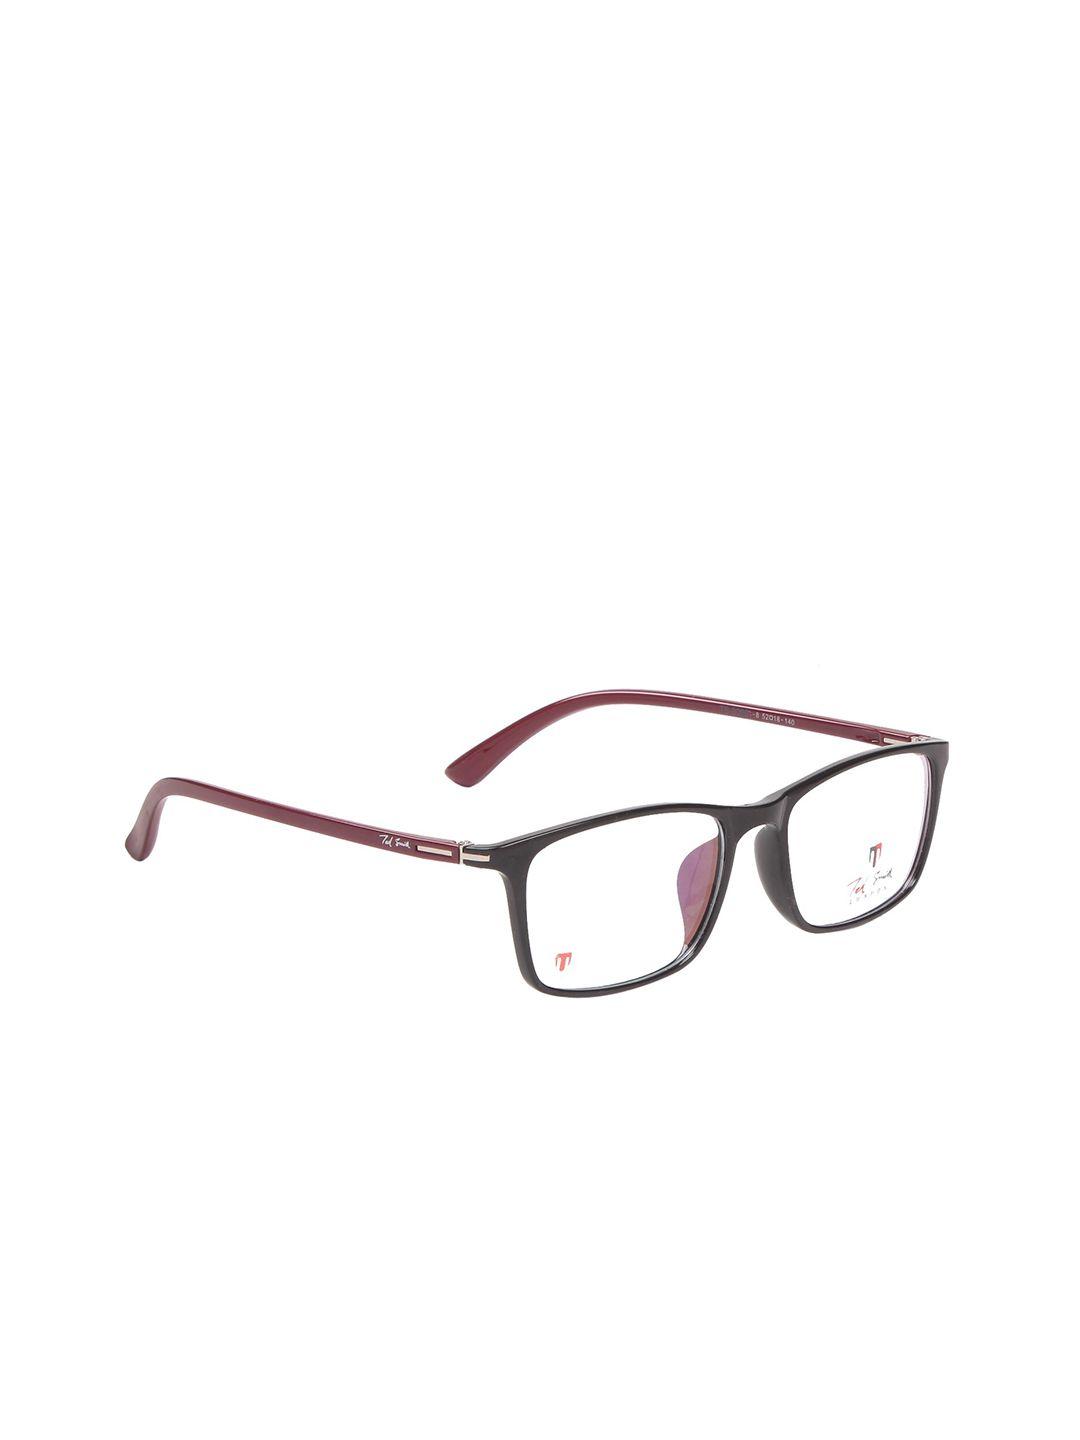 ted smith unisex black & brown full rim rectangle frames eyeglasses